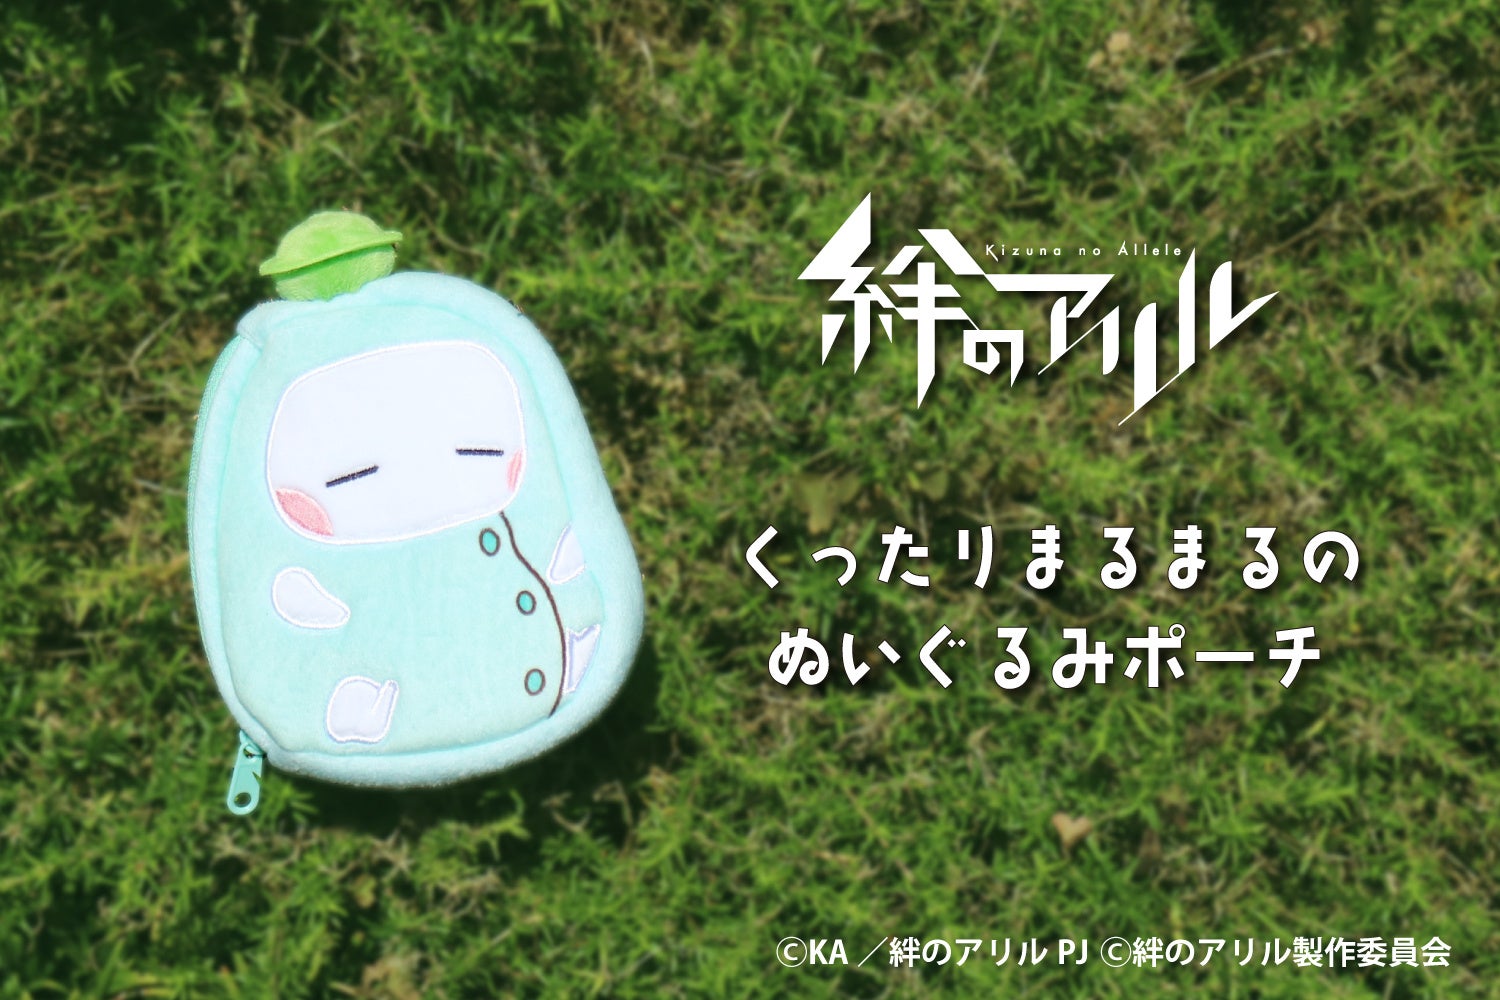 TVアニメ『絆のアリル』くったりしたシルエットと表情がかわいい「まるまる」のぬいぐるみポーチを発売